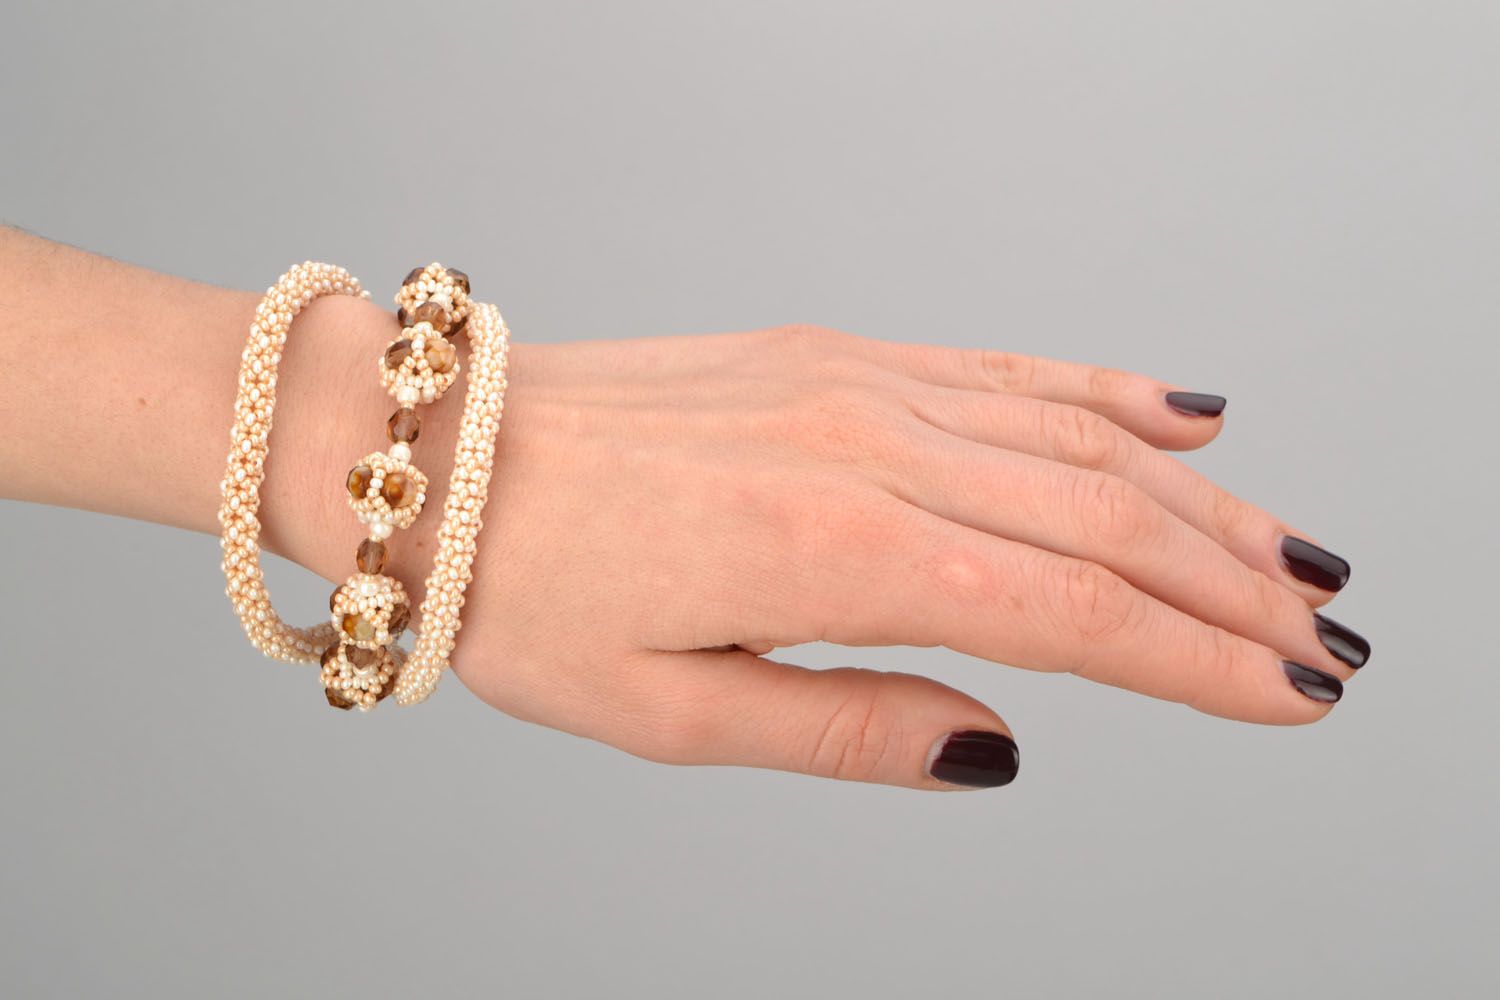 Caramel beads chain charm bracelet for girl photo 2